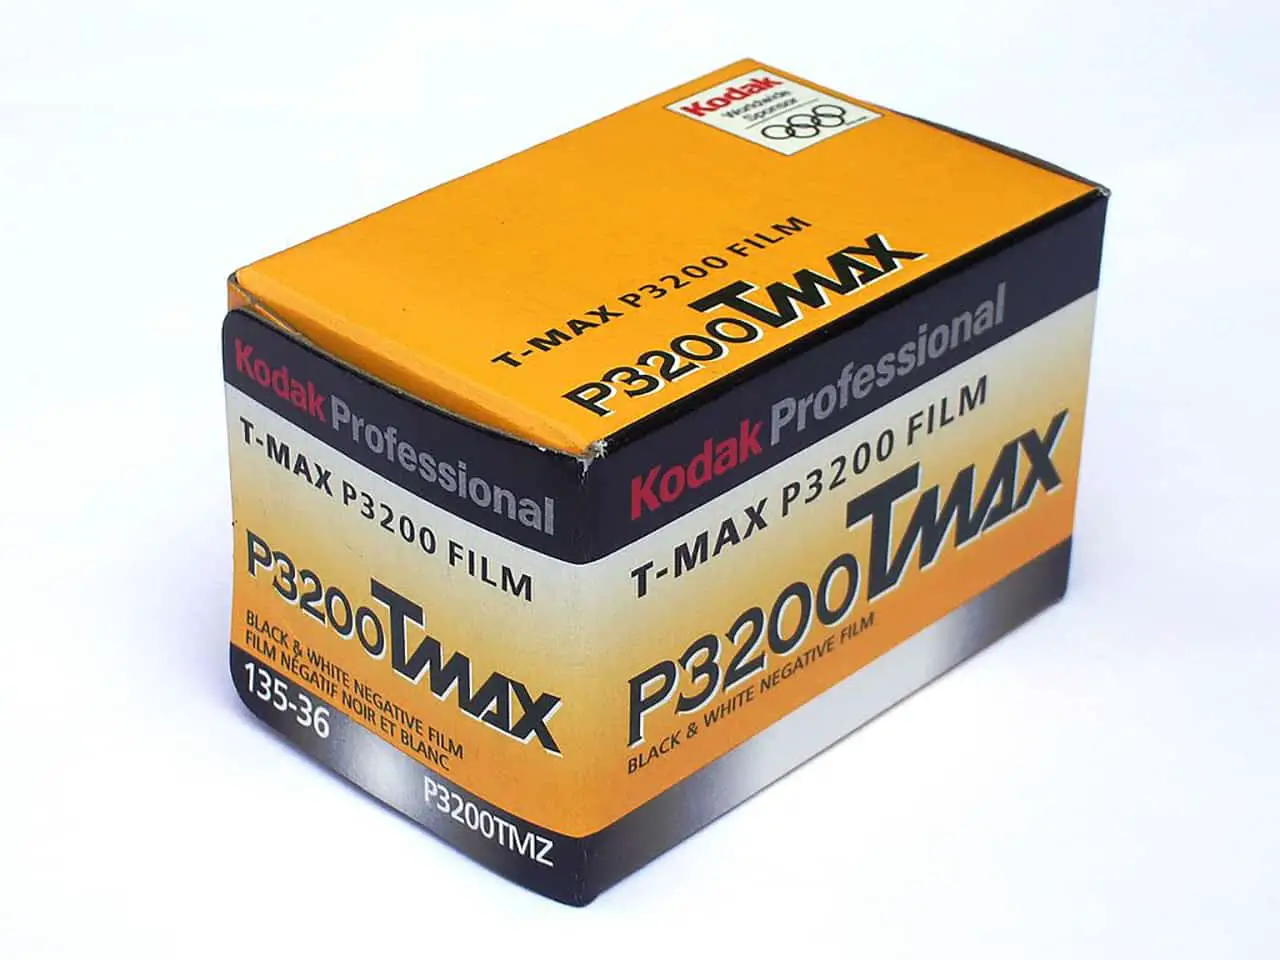 Film News: The triumphant return of Kodak T-Max 3200